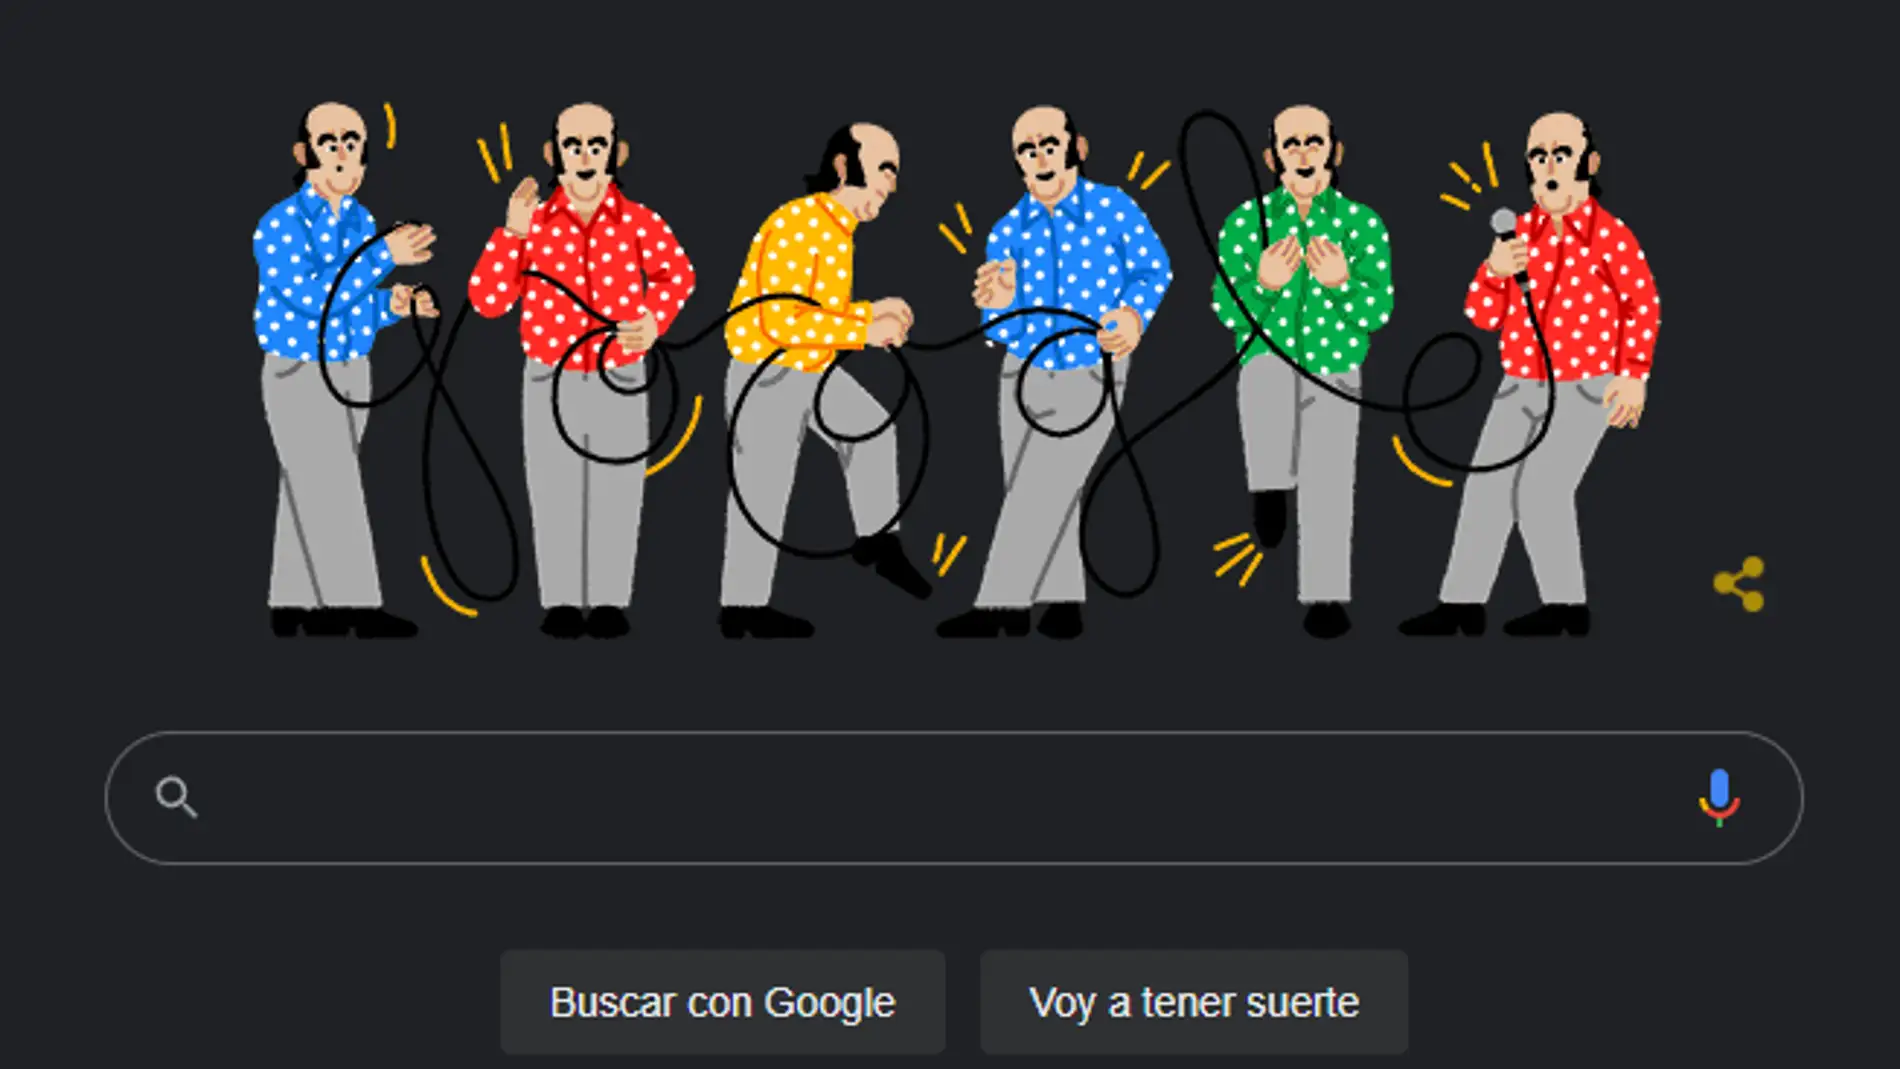 El homenaje de Google a Chiquito de la calzada